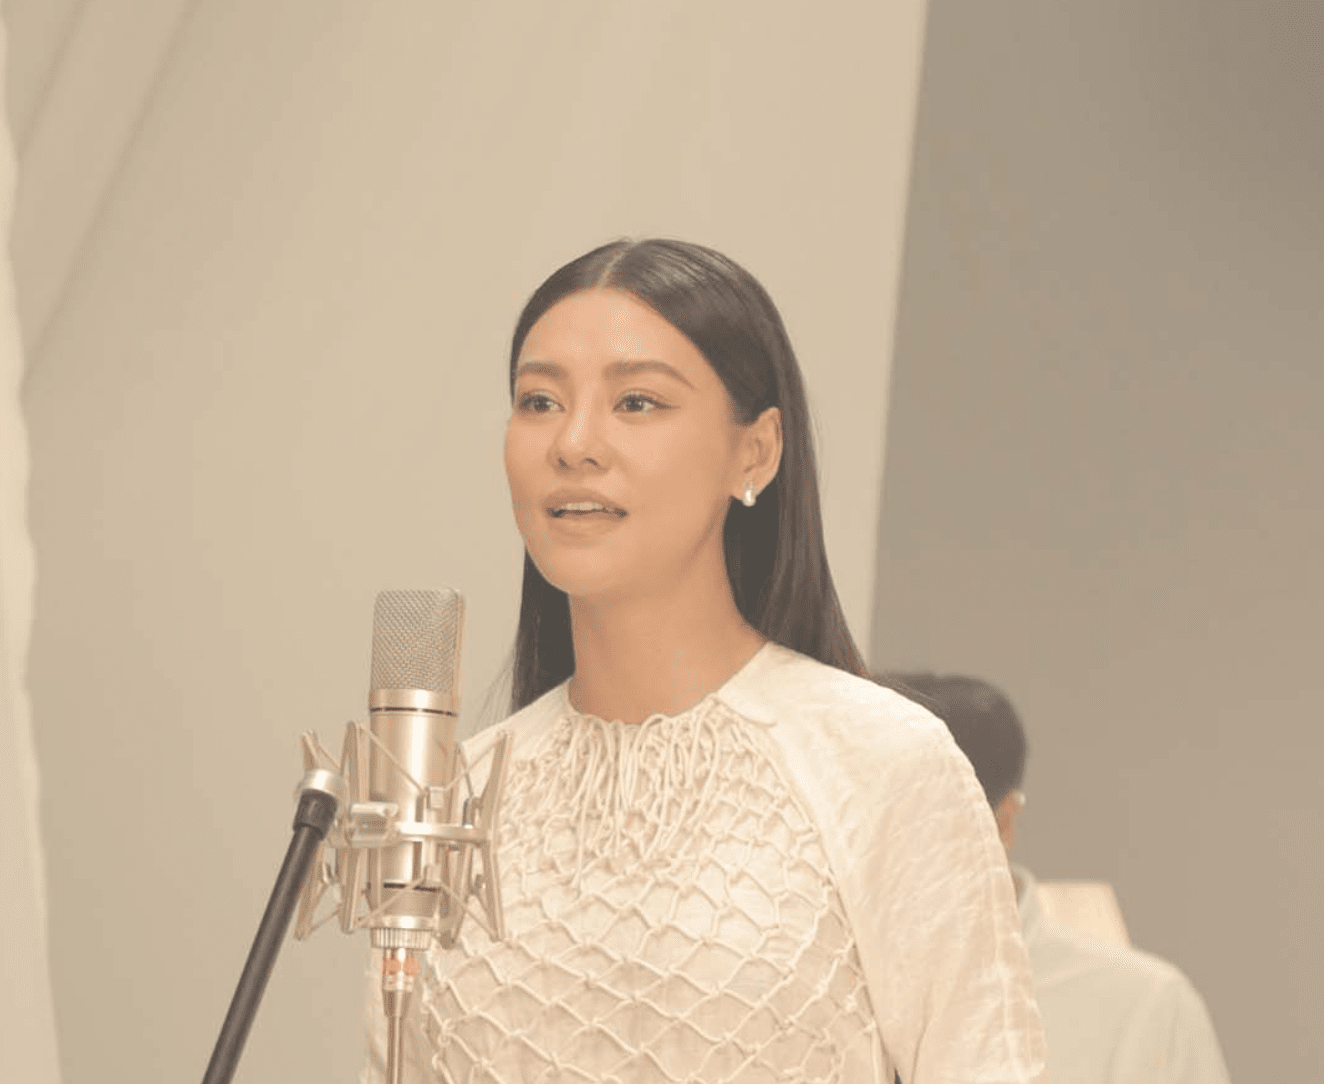 Bùi Lan Hương sáng tác nhạc phim “Giấc Mơ Của Mẹ” từ câu chuyện của riêng mình